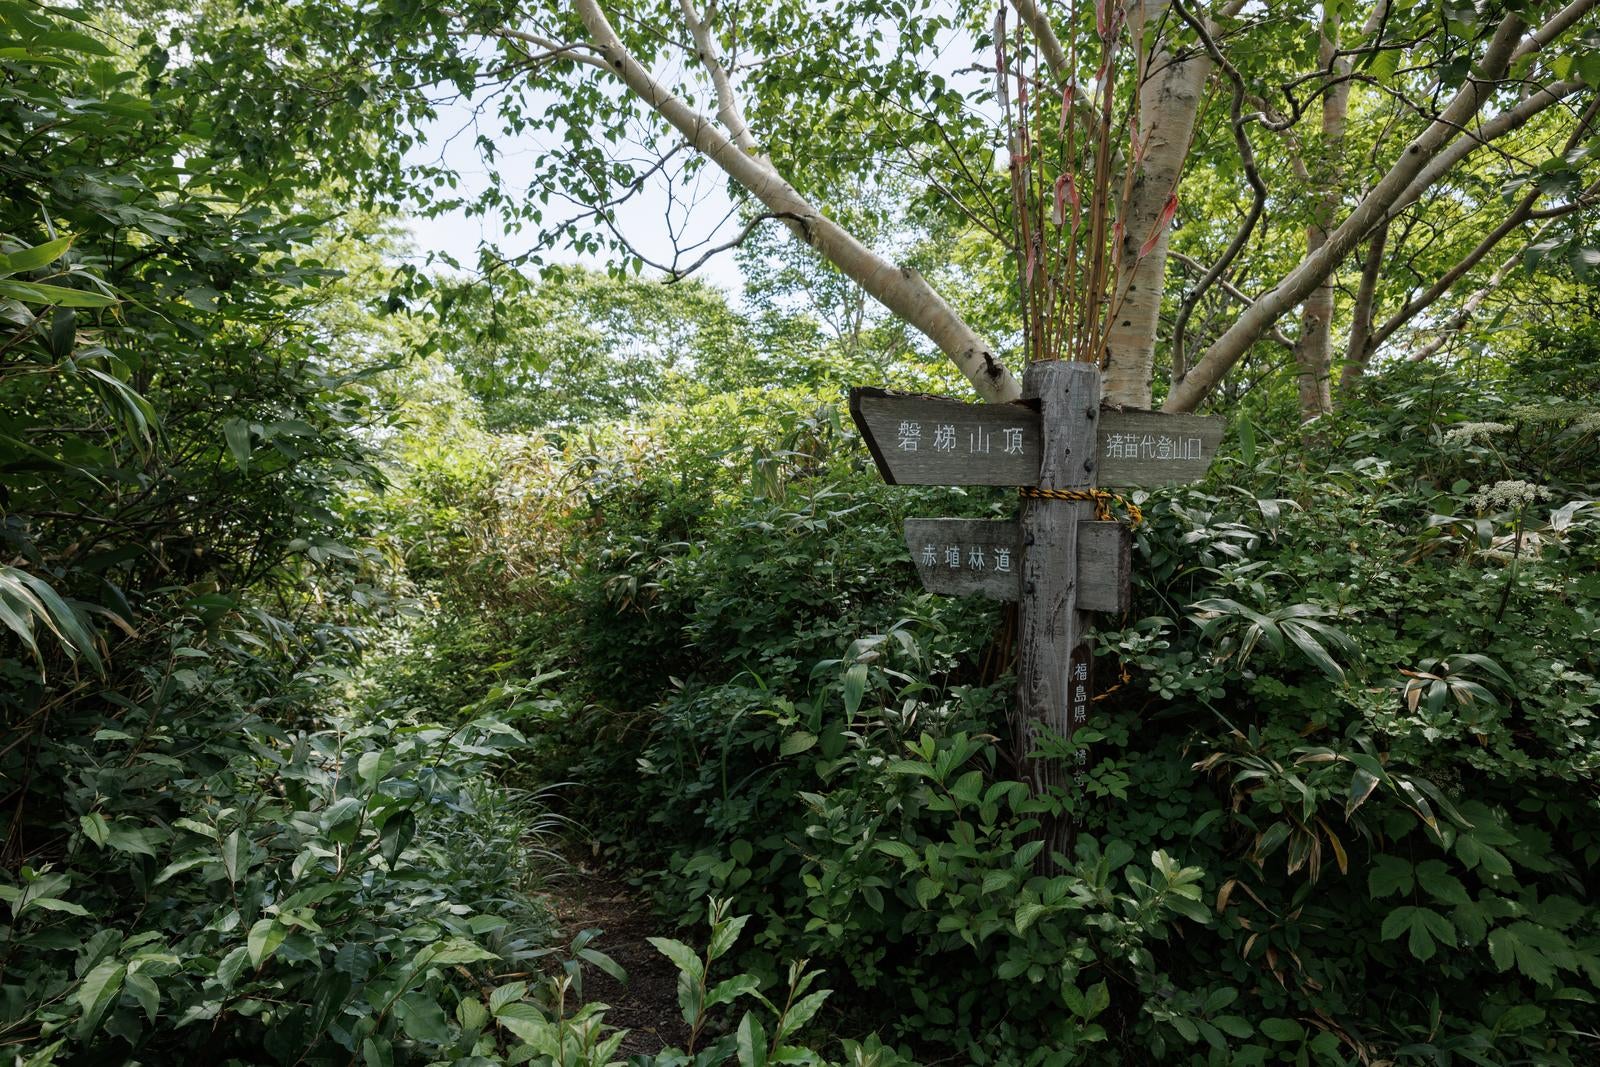 「茂みに囲まれた登山道と指導標」の写真